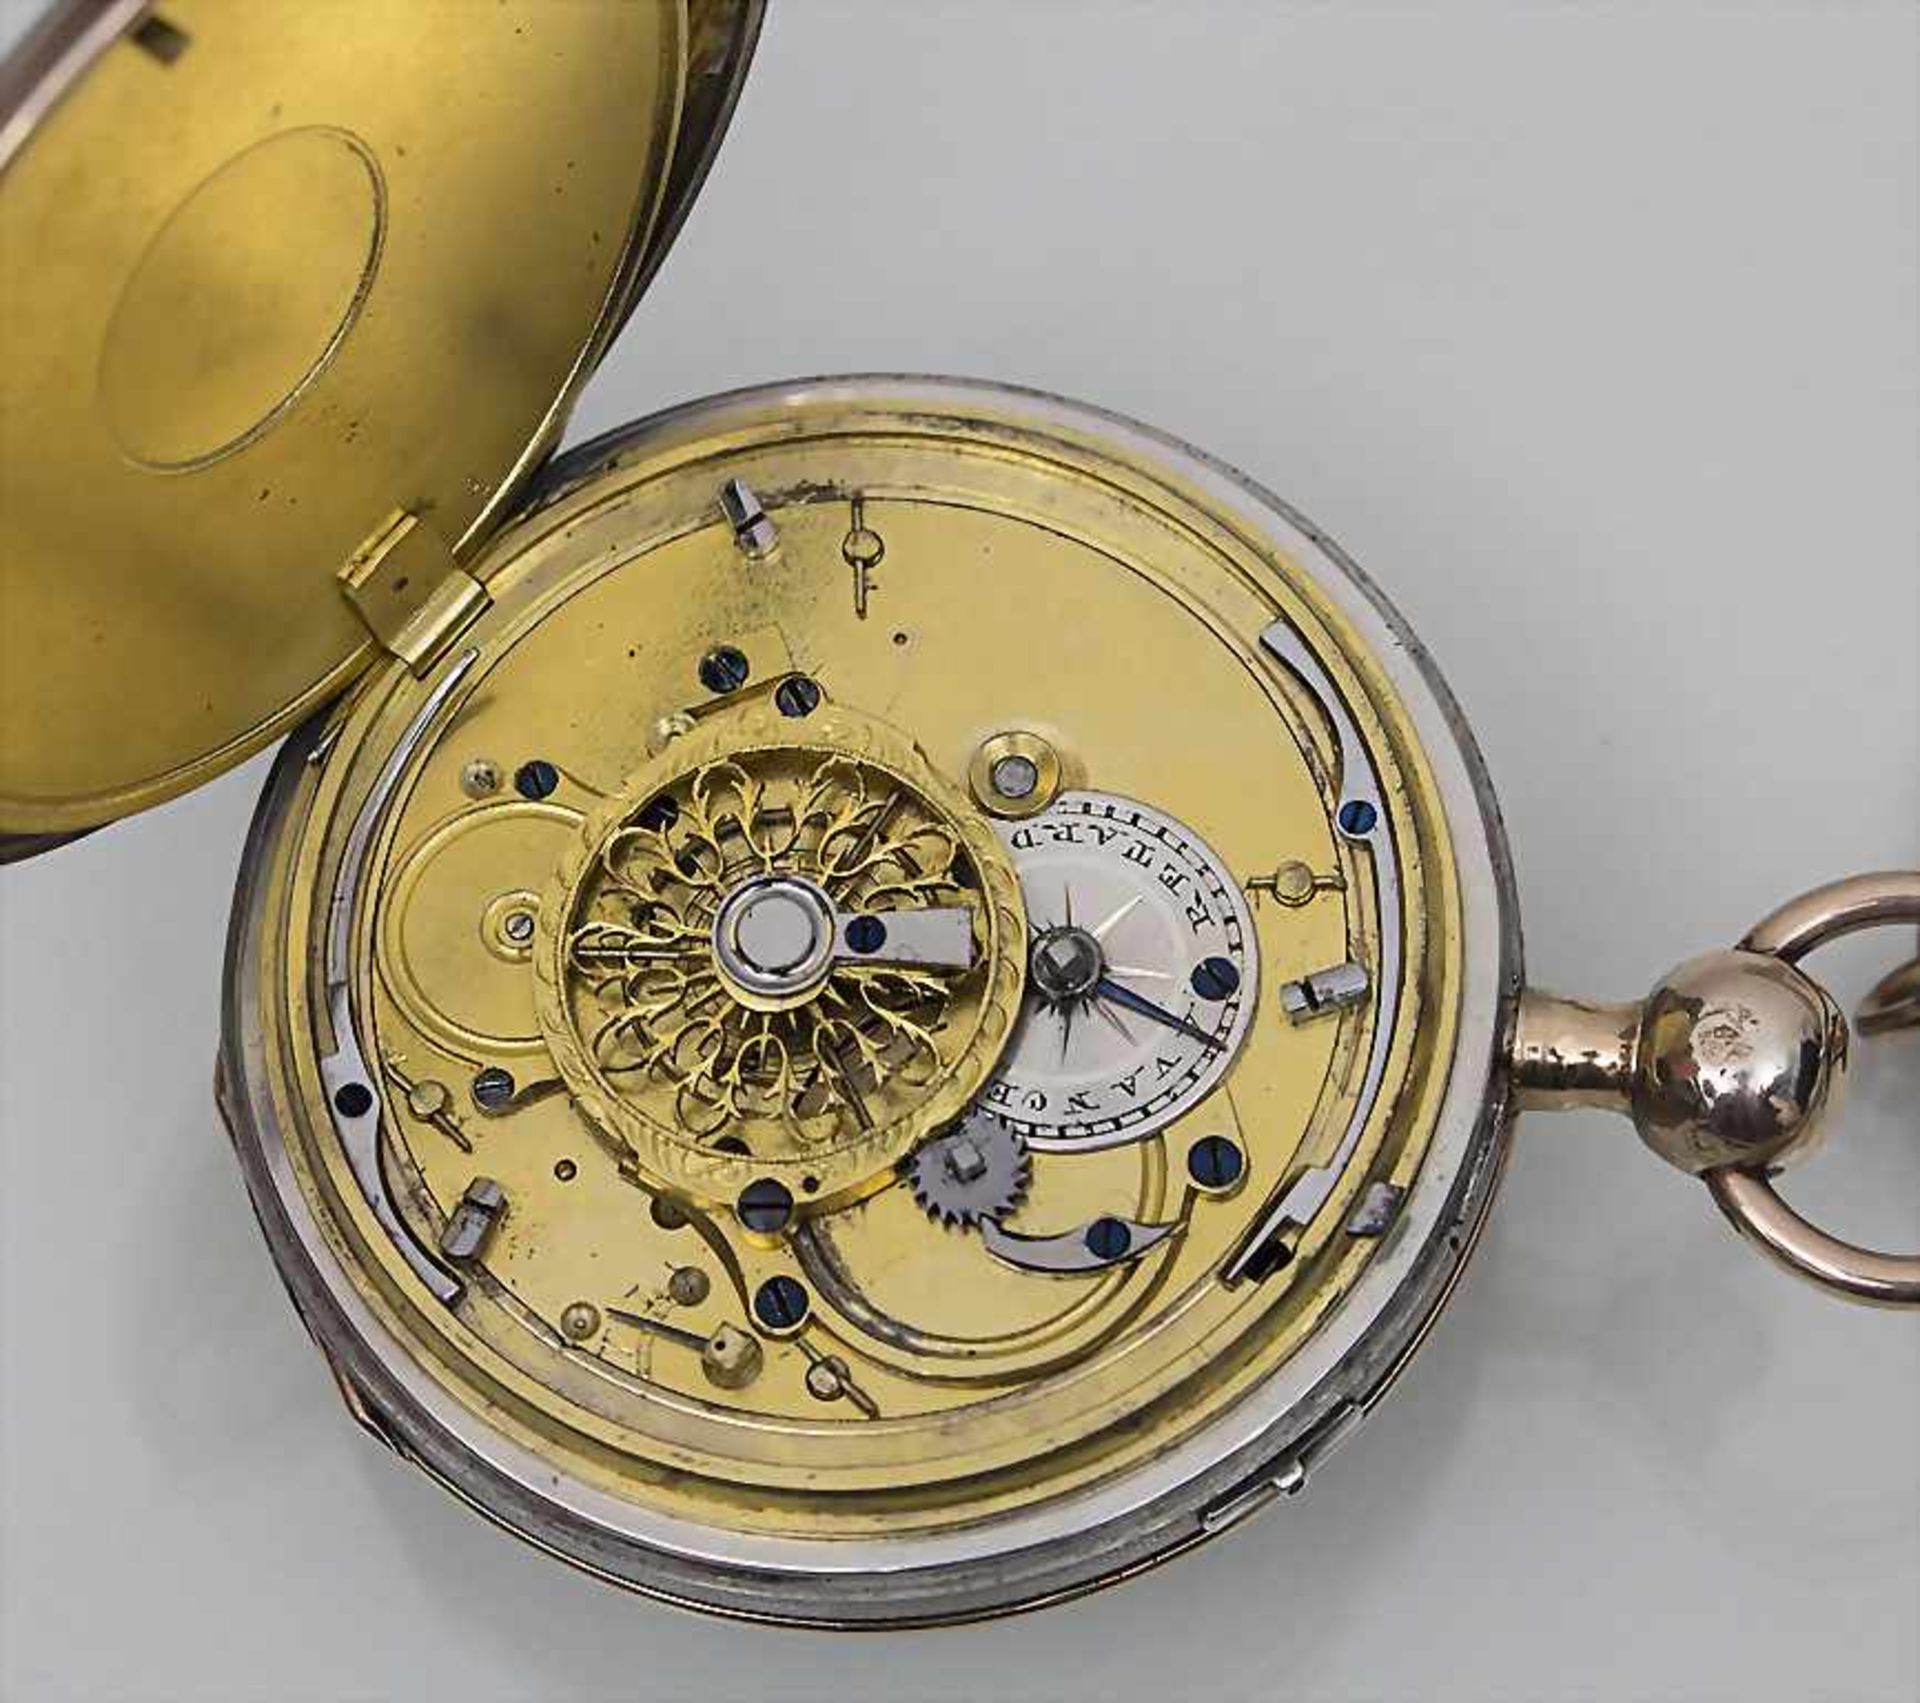 Taschenuhr / Pocket Watch, ¼-Repetition, Swiss Made, ca. 1850Gehäuse: Rotgold/Silber, Nr. - Bild 2 aus 2